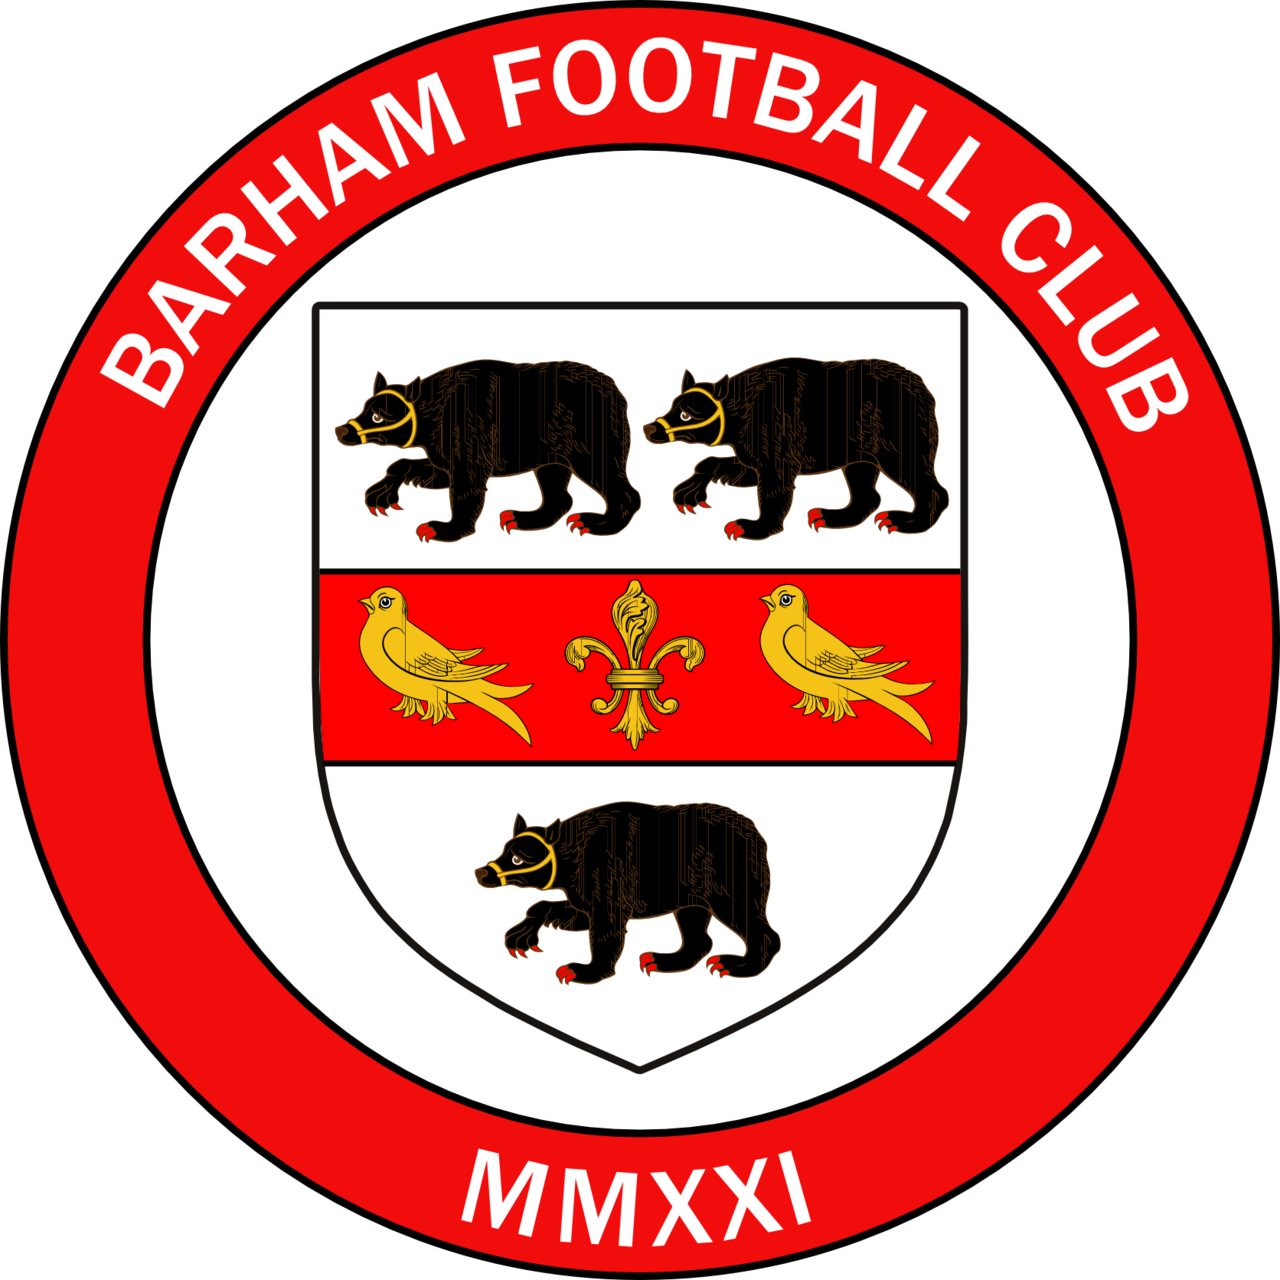 Barham FC's Newsletter